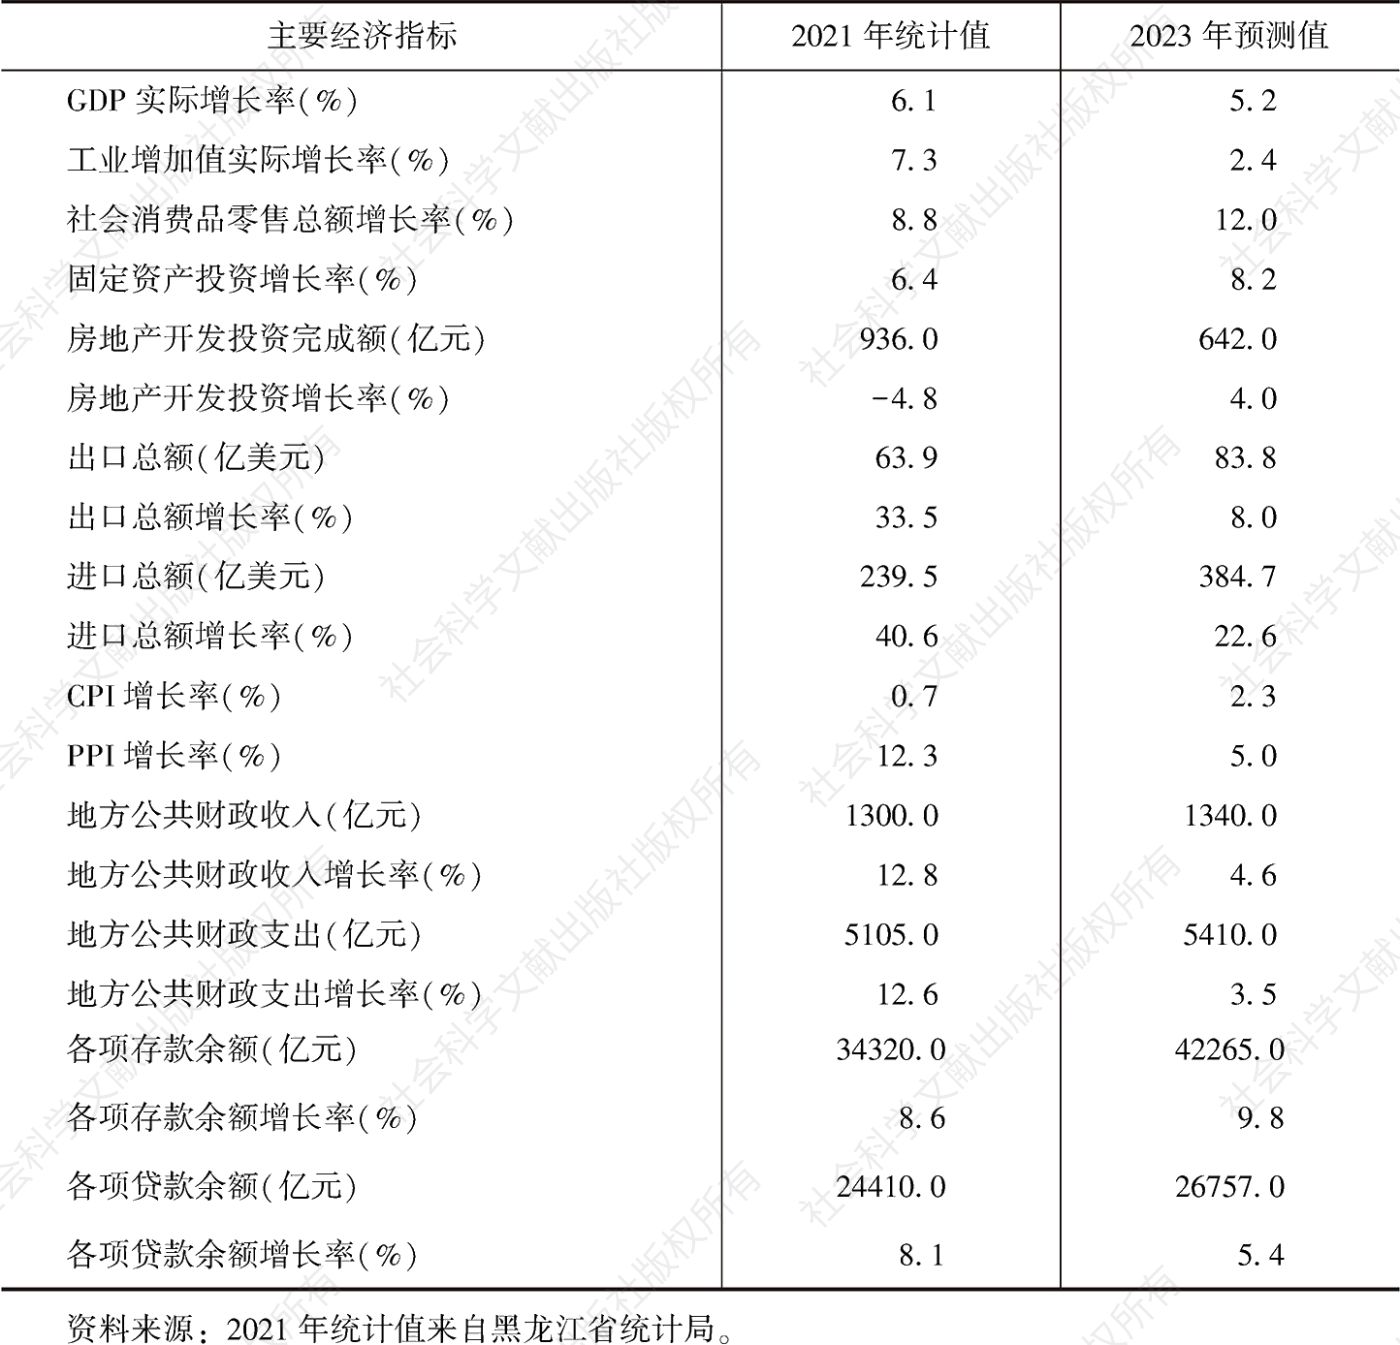 表2 2021年黑龙江省主要经济指标统计值及2023年预测值